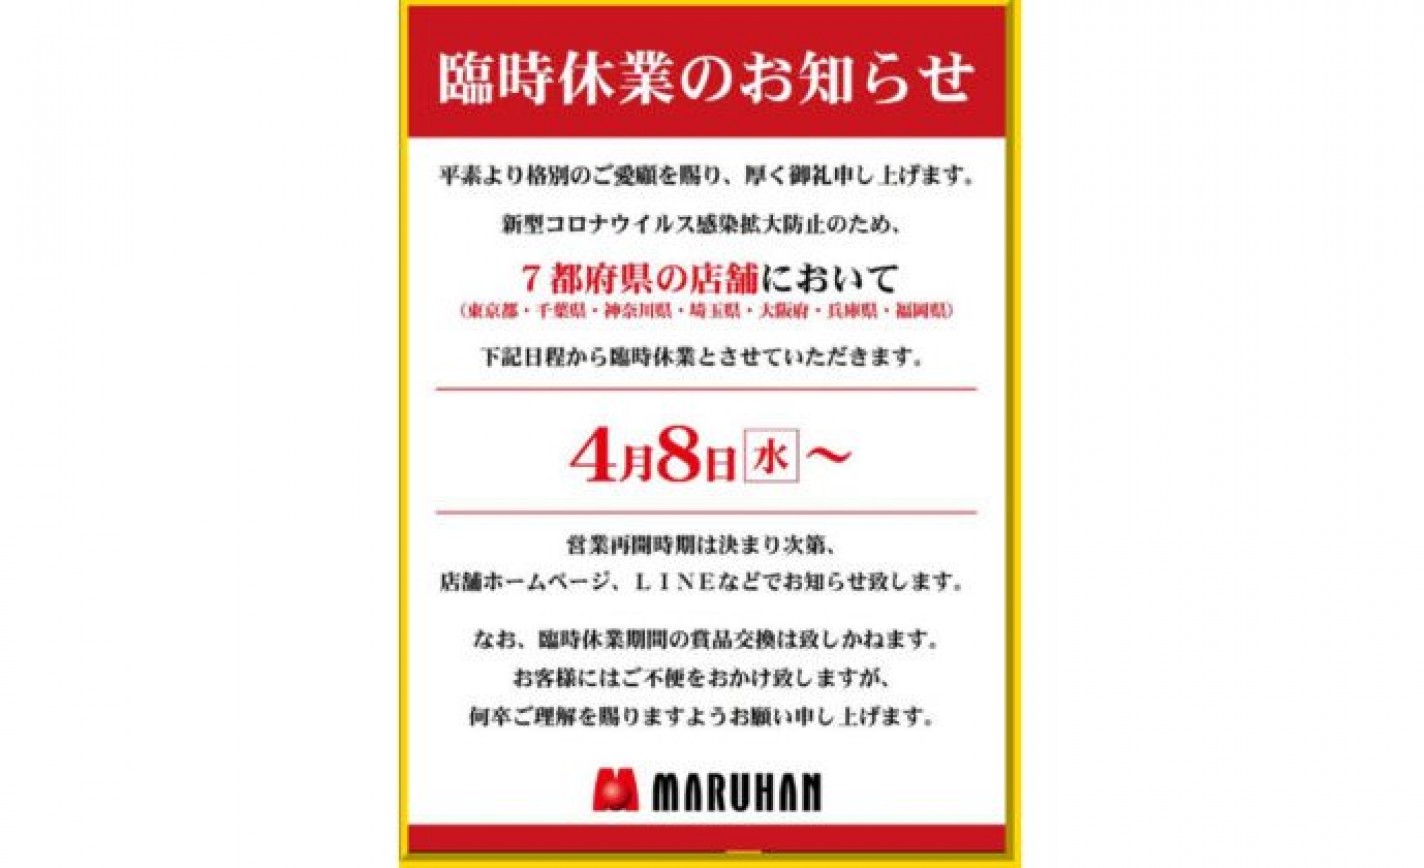 マルハン、7都府県の全101店舗を4月8日から休業 eyecatch-image